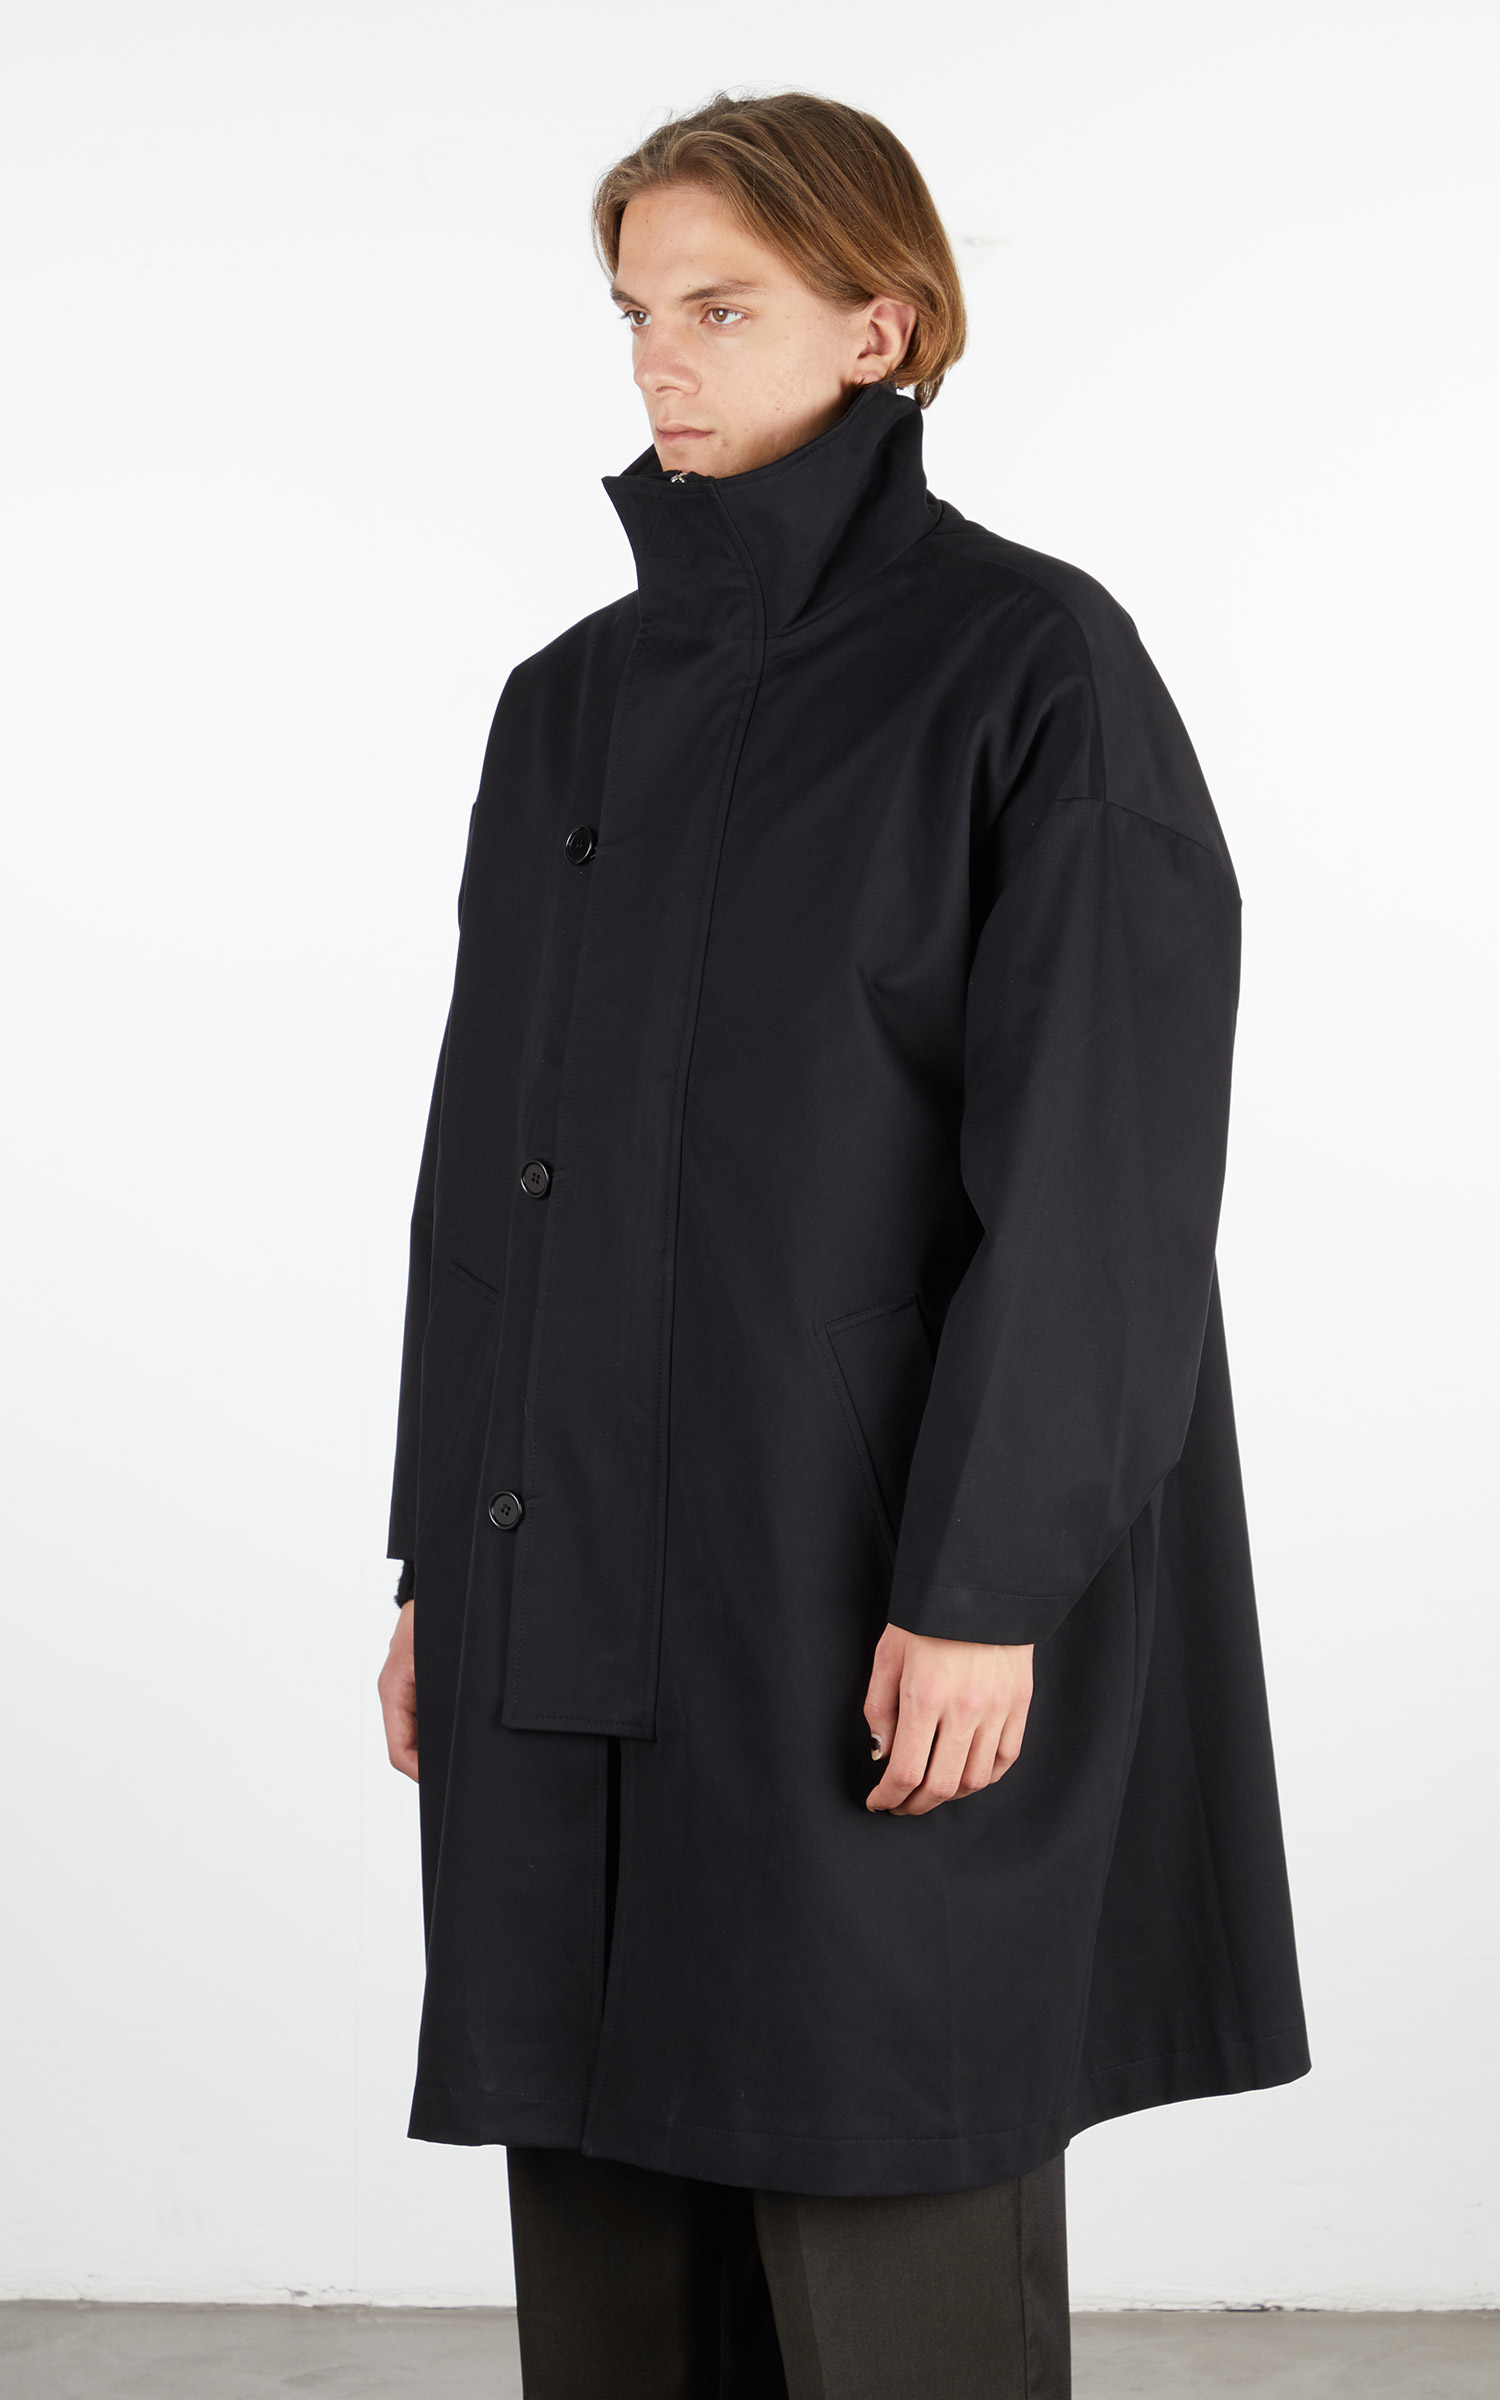 日本代理店正規品 21AW mfpen Johnston Coat ジョンストンコート S 黒 